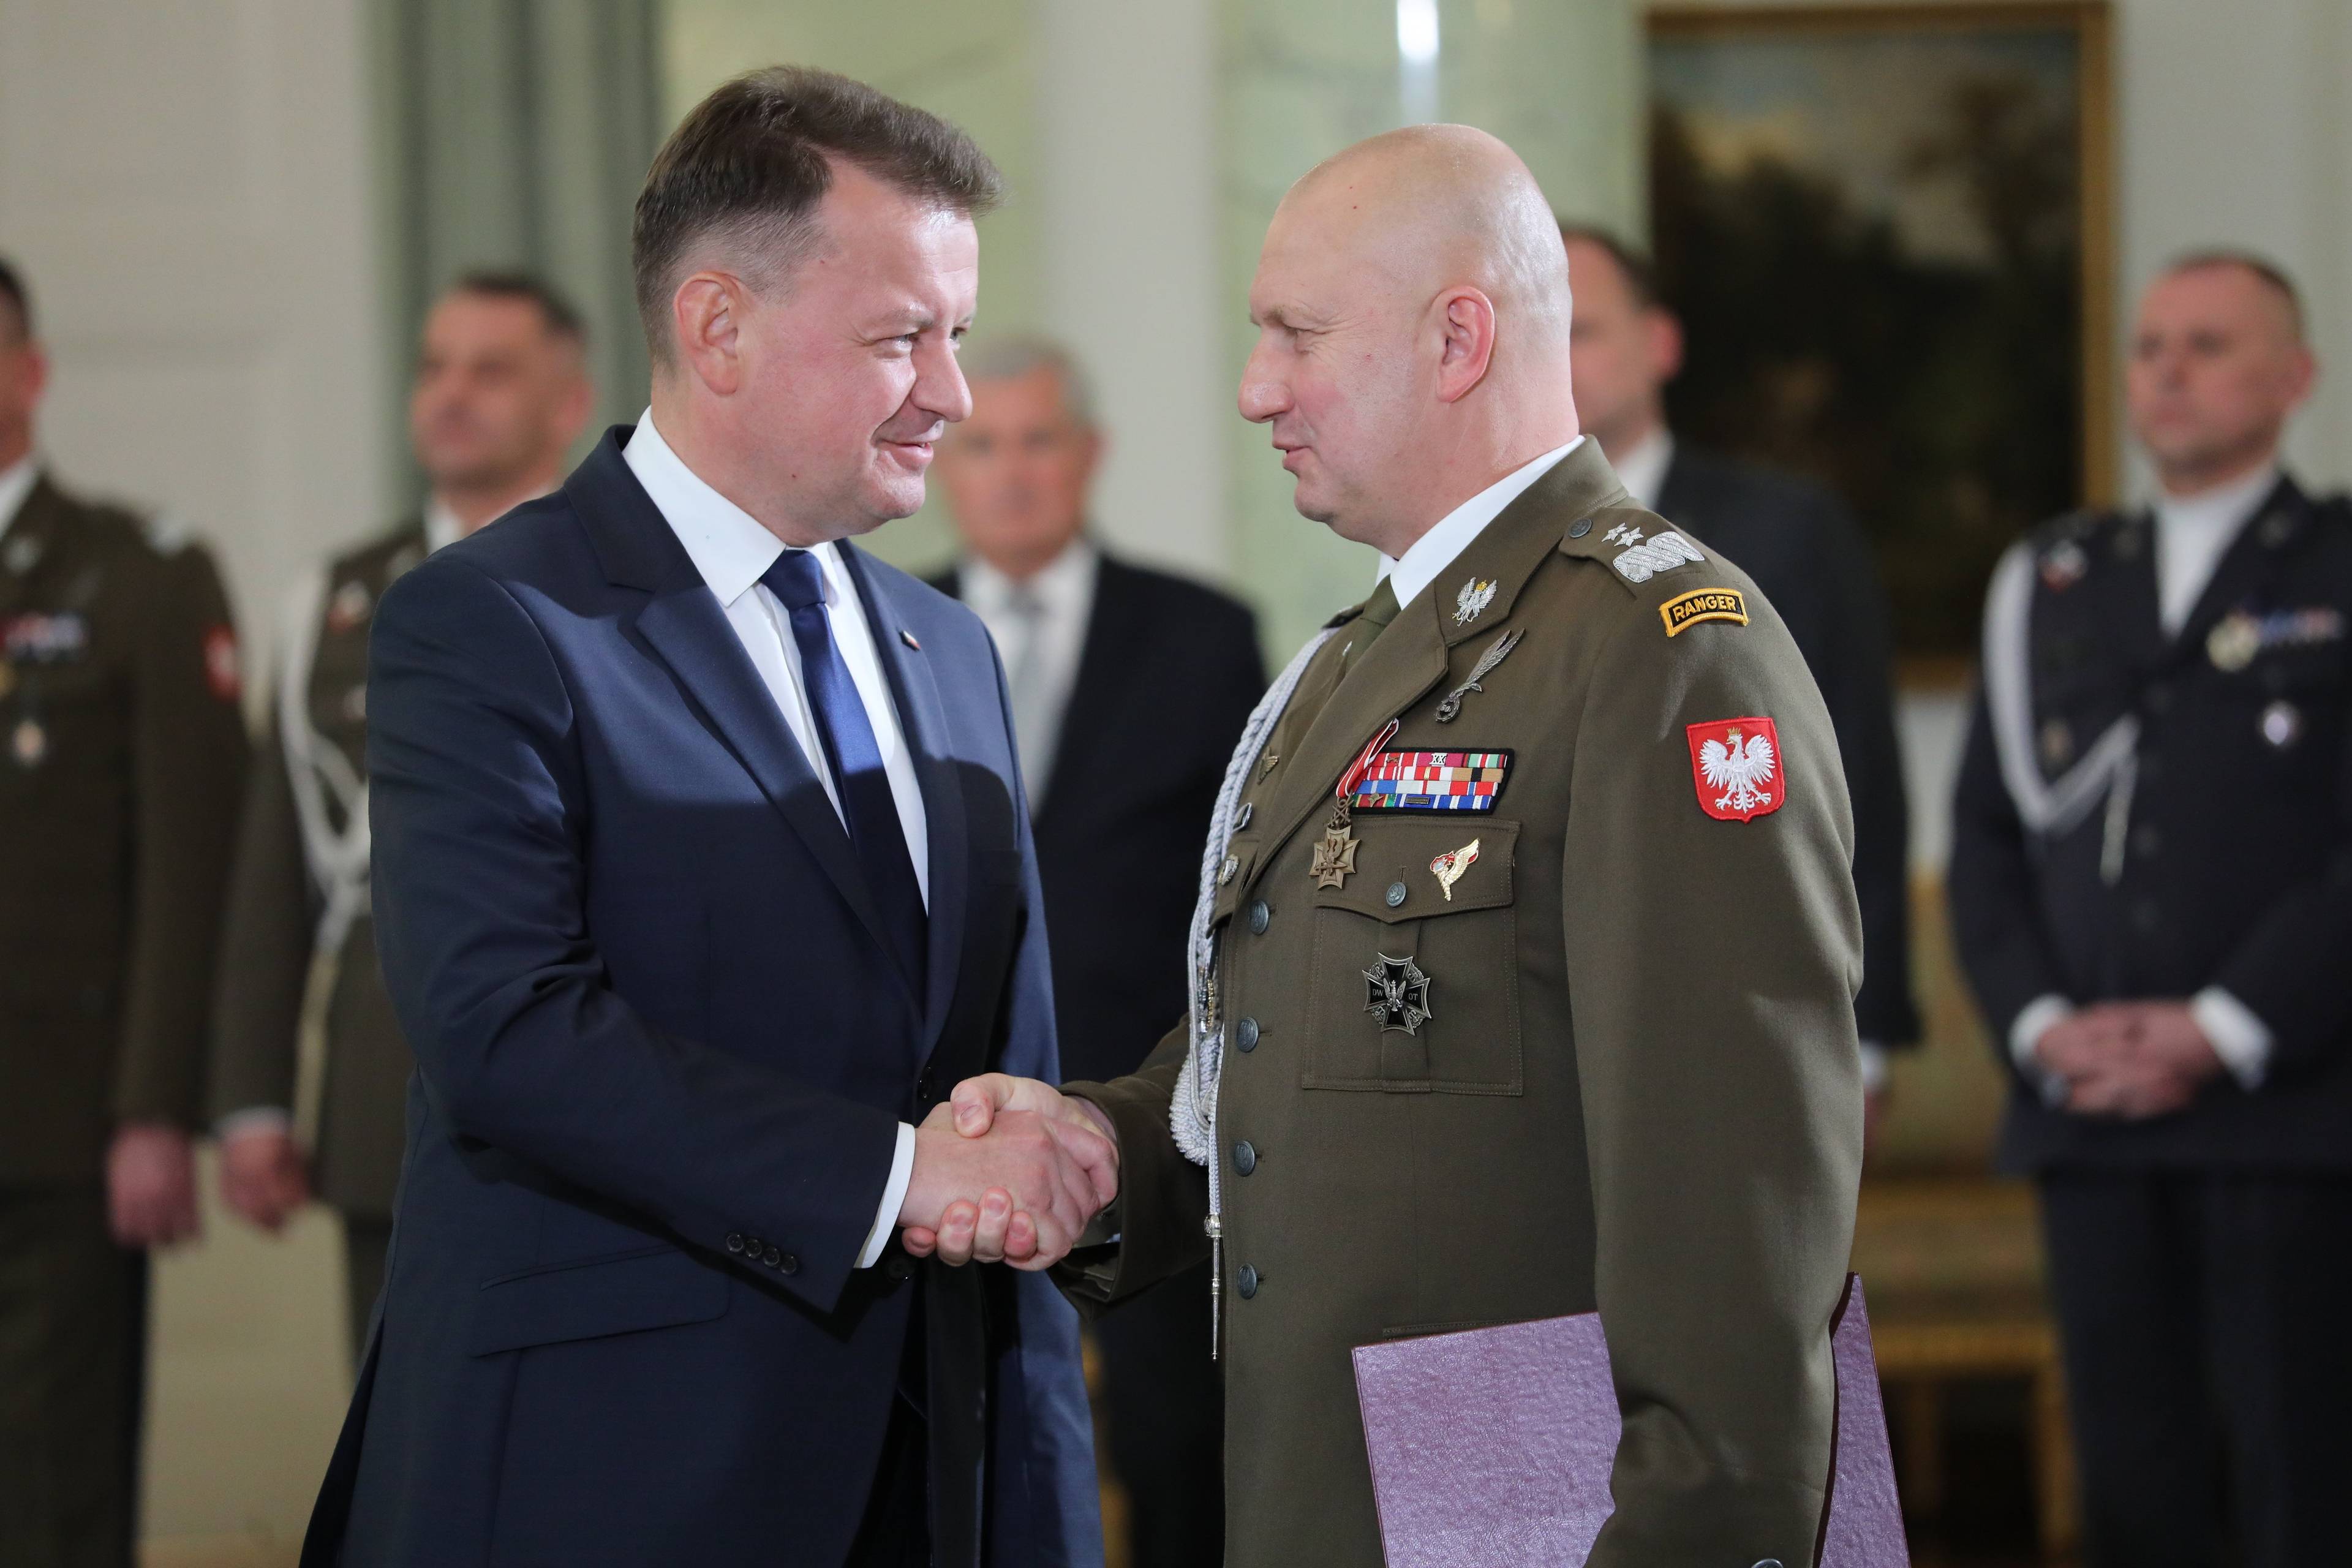 Minister Obrony Narodowej Mariusz Błaszczak gratuluje generałowi Maciejowi Kliszowi objęcia funkcji Dowódcy Operacyjnego Rodzajów Sił Zbrojnych podczas uroczystości w Pałacu Prezydenckim 10.10.2023 w Warszawie.